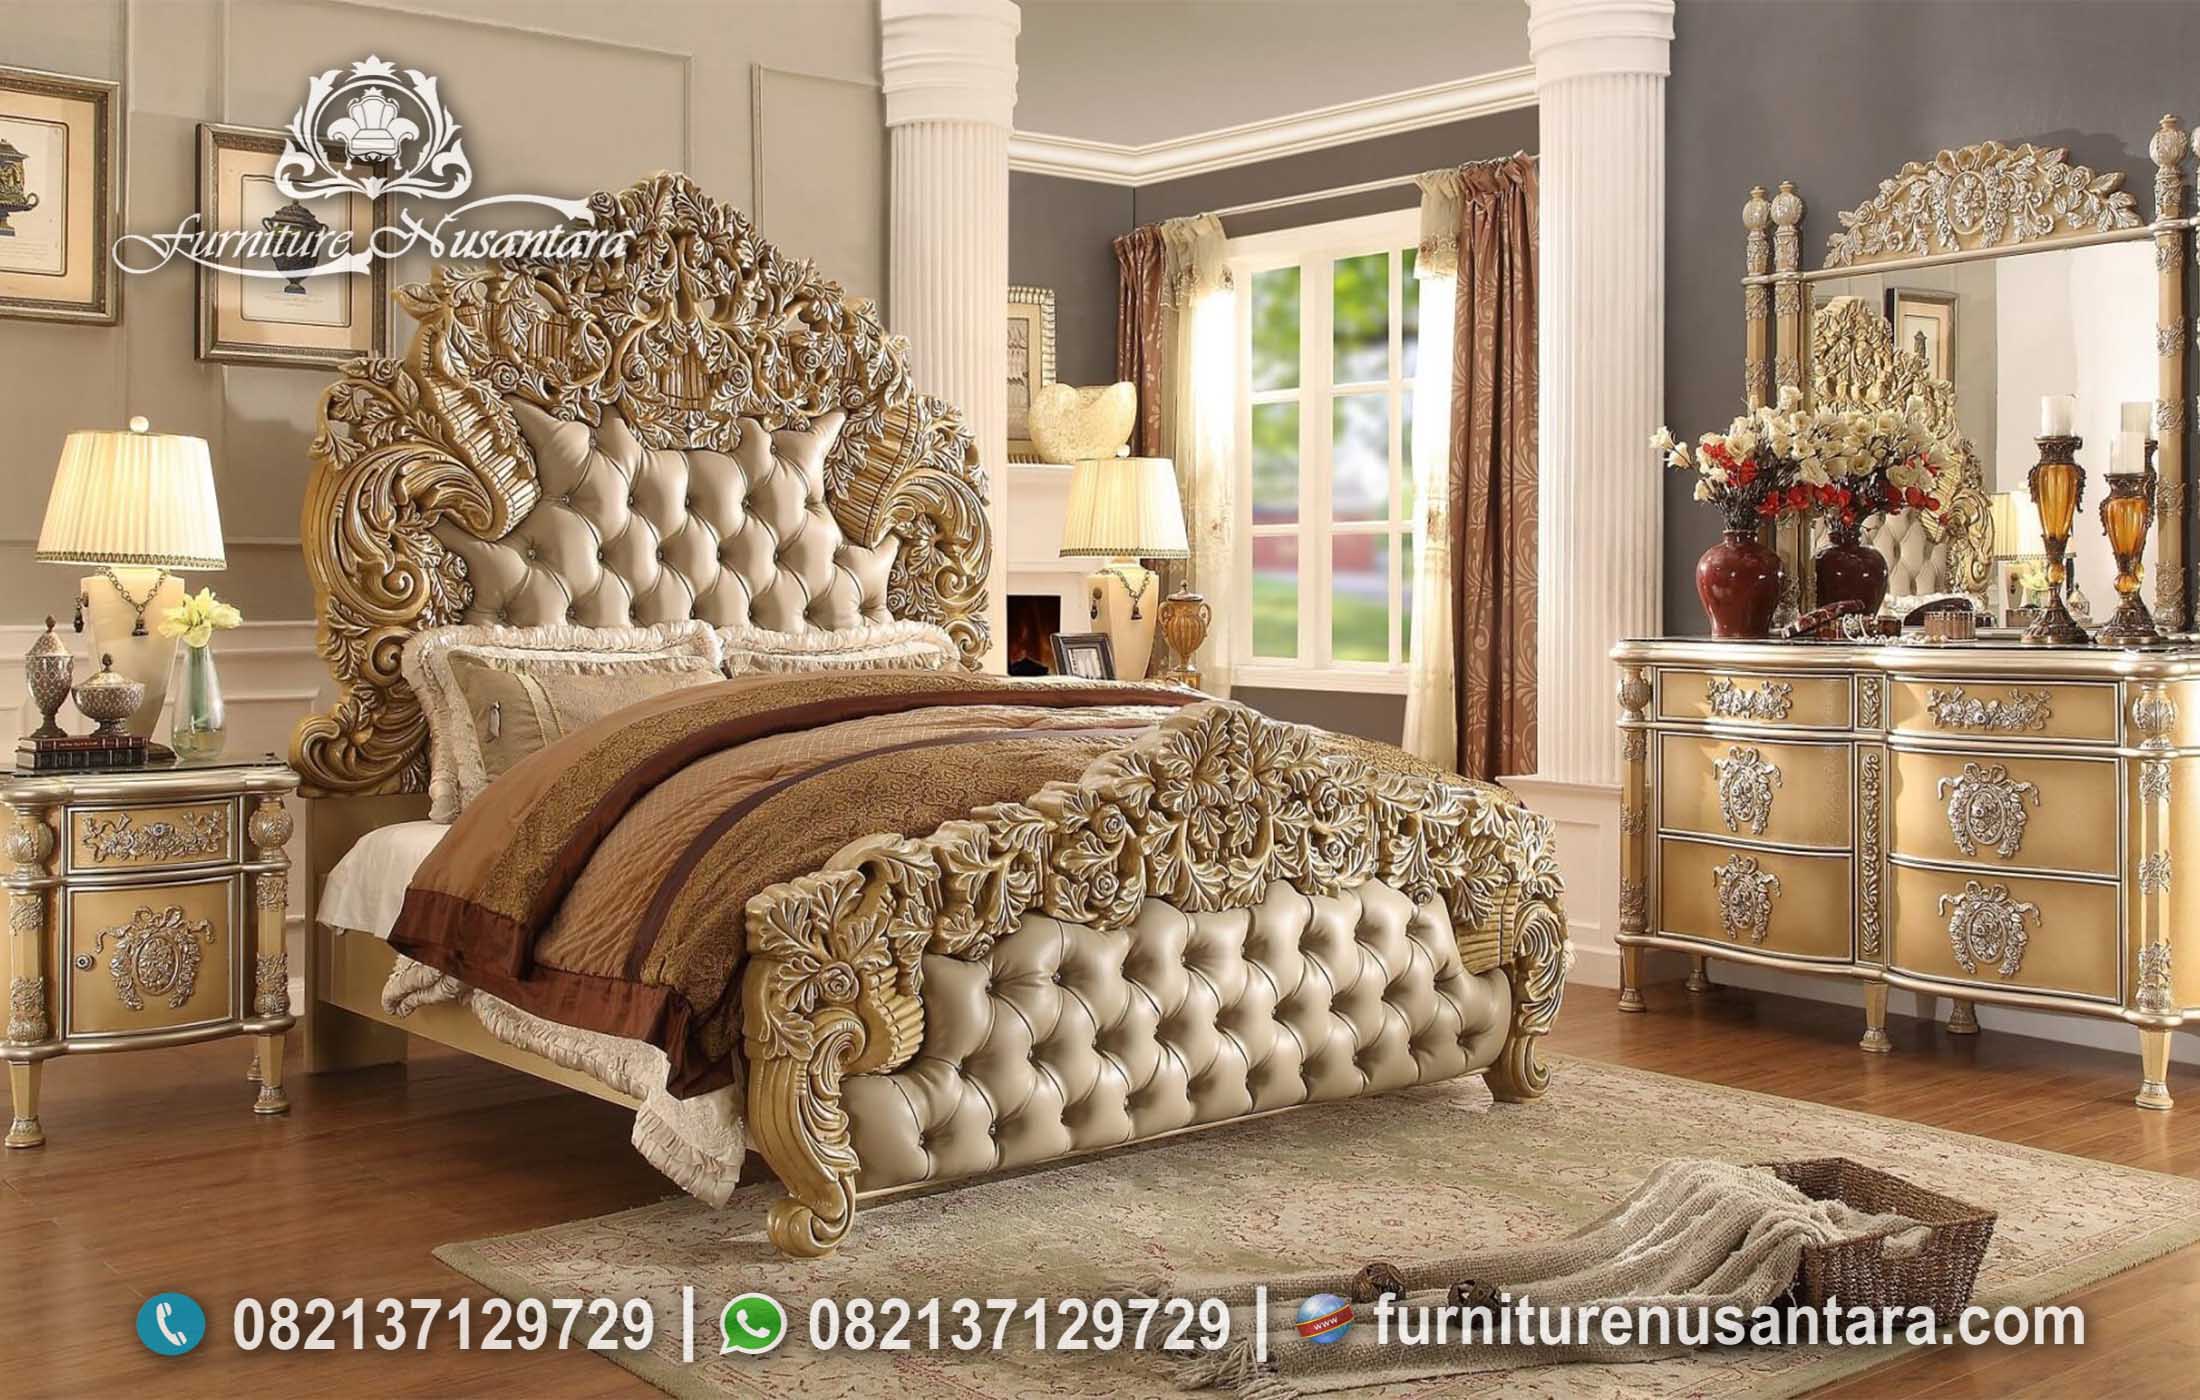 Bedroom Set Desain Victorian Casual KS-182, Furniture Nusantara